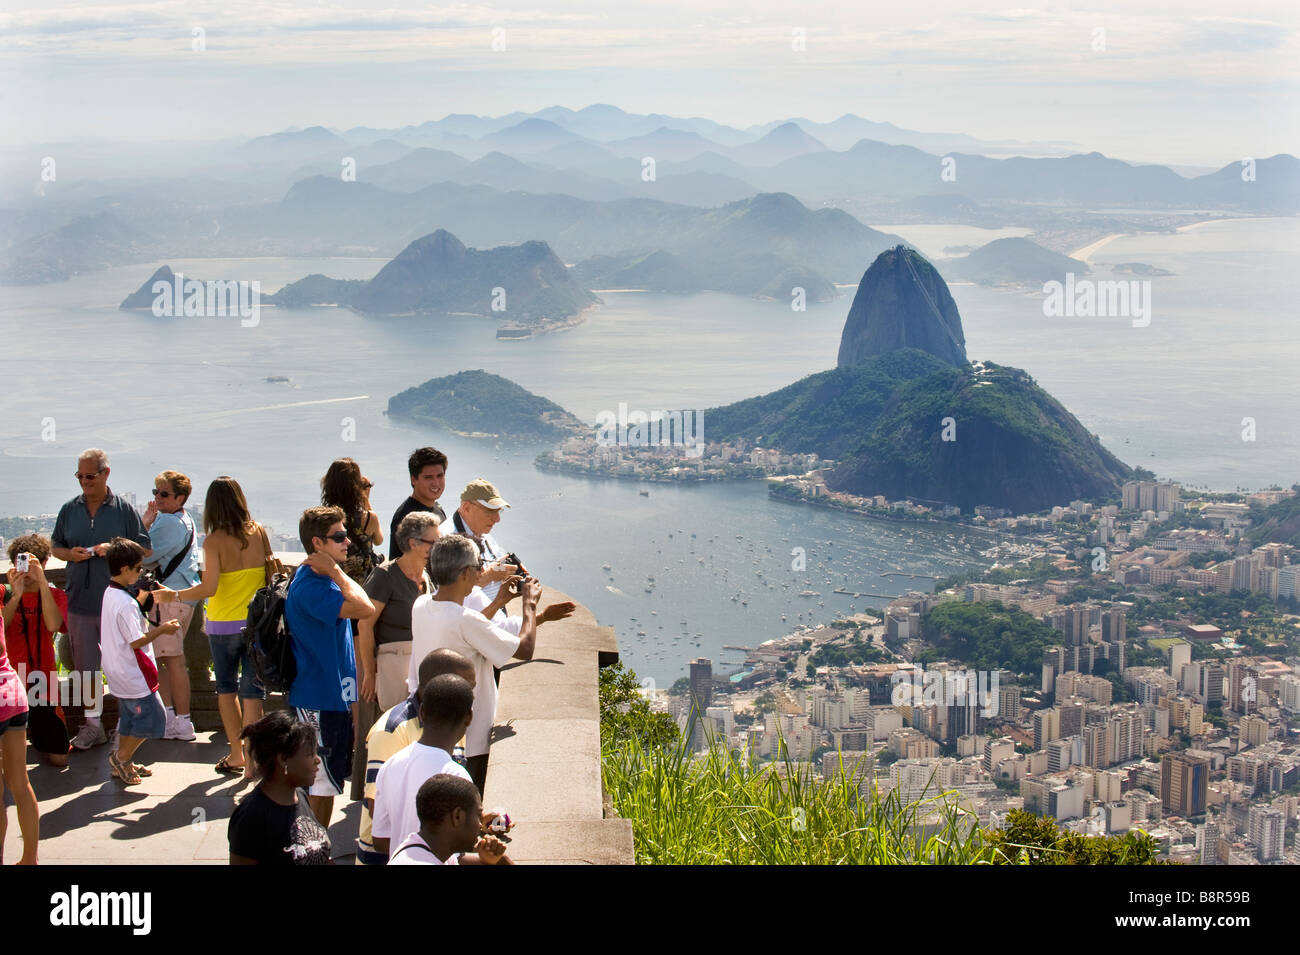 Los turistas de RÍO DE JANEIRO, vista desde la colina de Corcovado, debajo de la estatua de Cristo Redentor mirando hacia SUGARLOAF MOUNTAIN Foto de stock